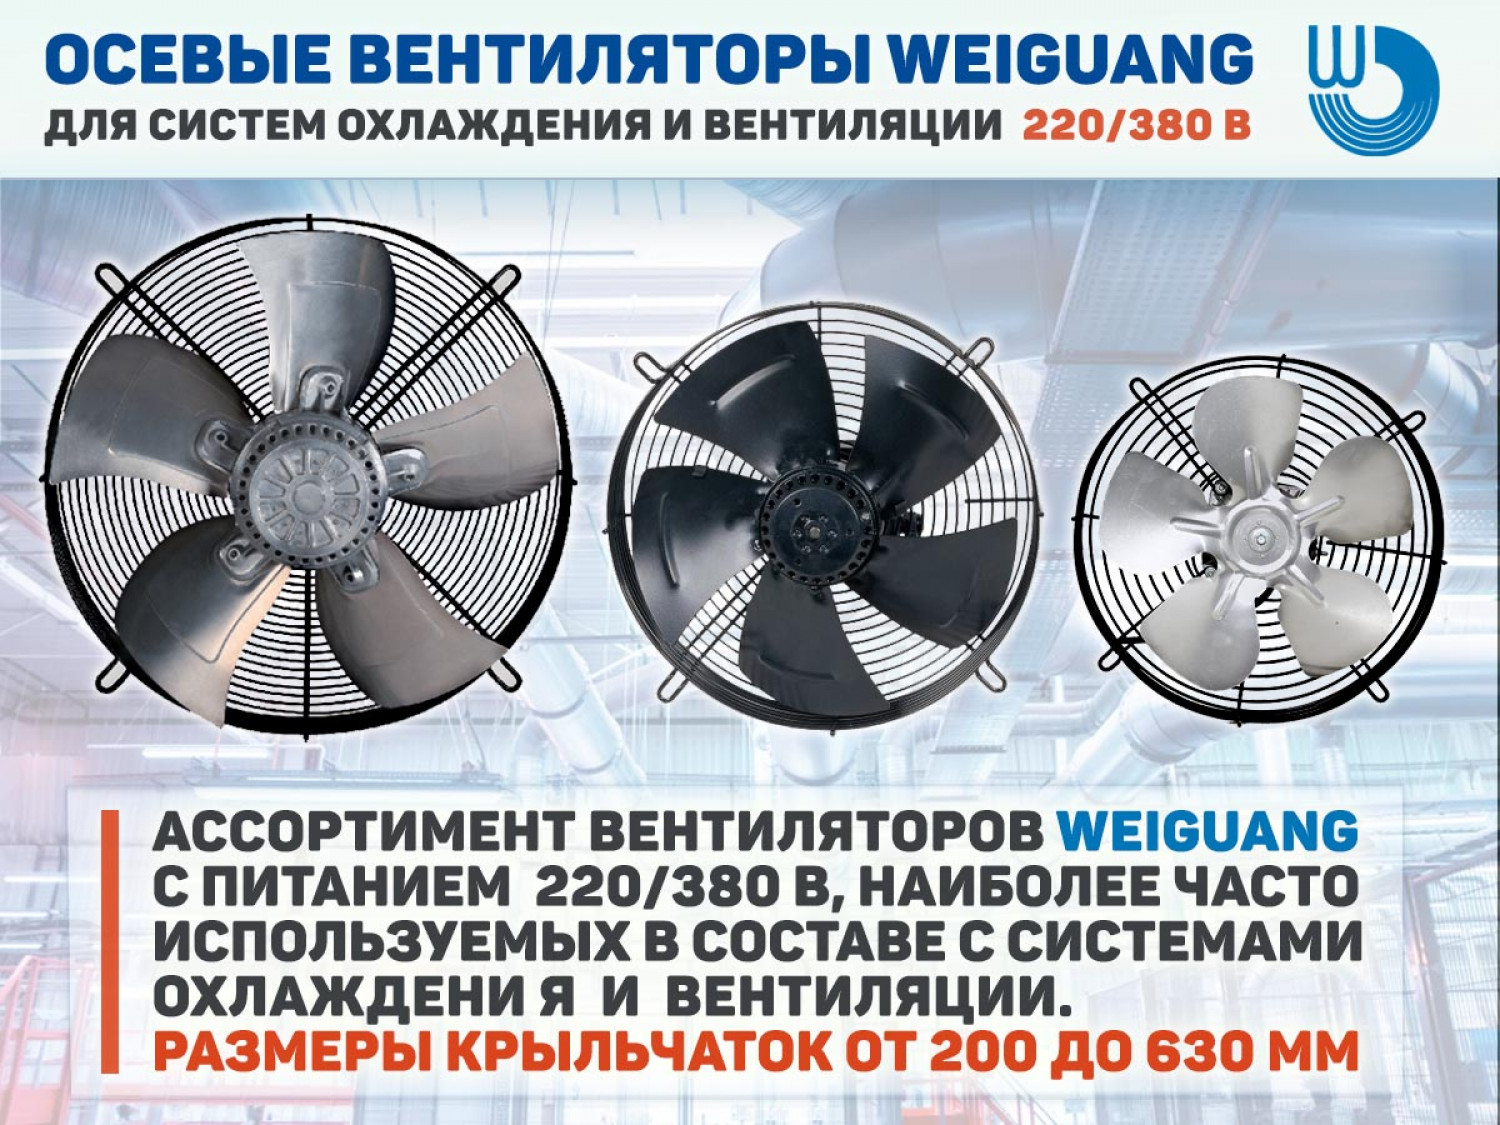  Осевые вентиляторы Weiguang для систем охлаждения и вентиляции